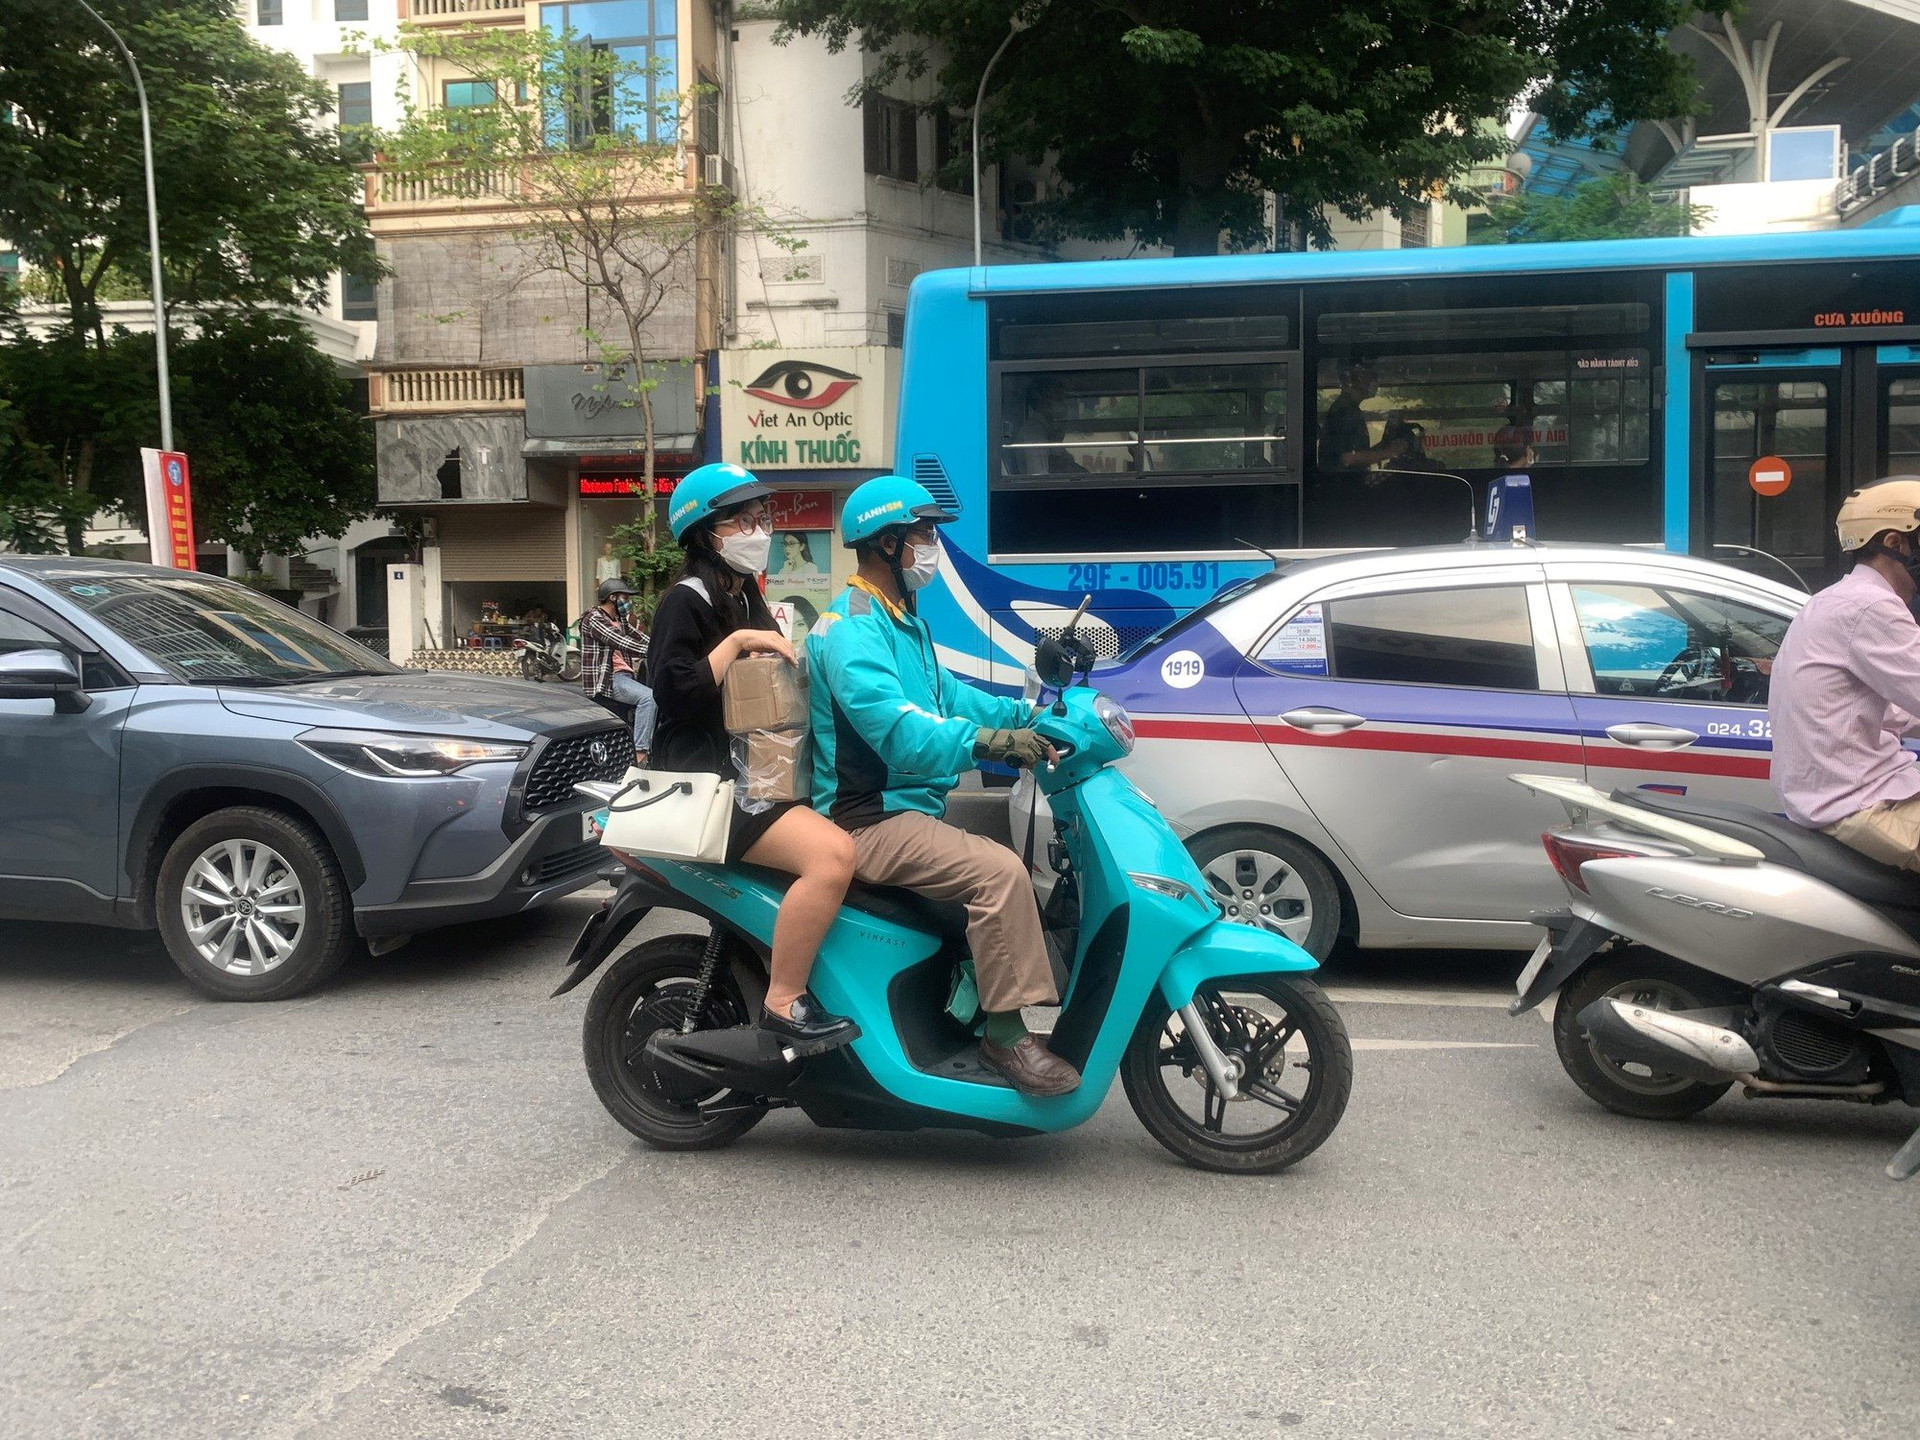 Cộng đồng tài xế SM Bike sau 2 tháng chạy ‘xe ôm điện’: ‘Khách nhiều, thu nhập ổn định’